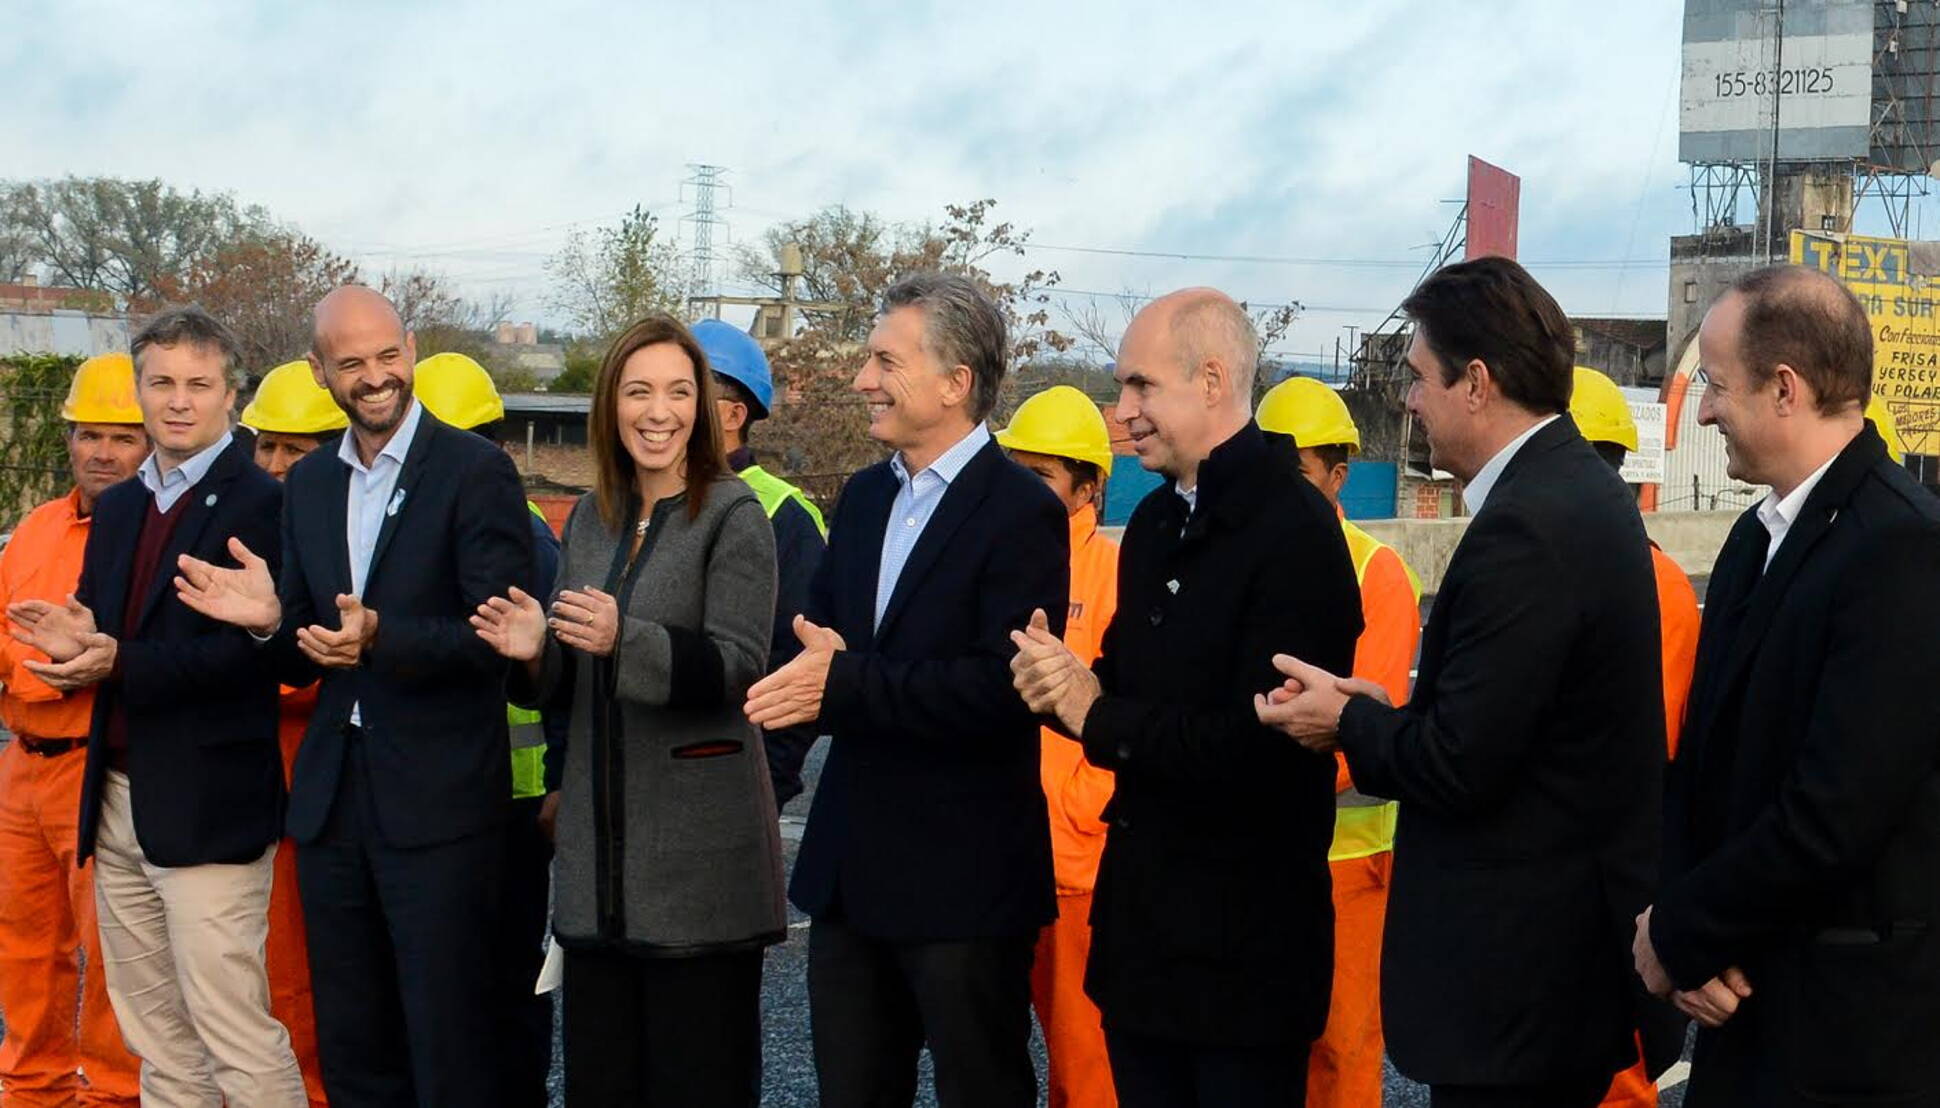 El Presidente inauguró una obra vial en el Puente La Noria